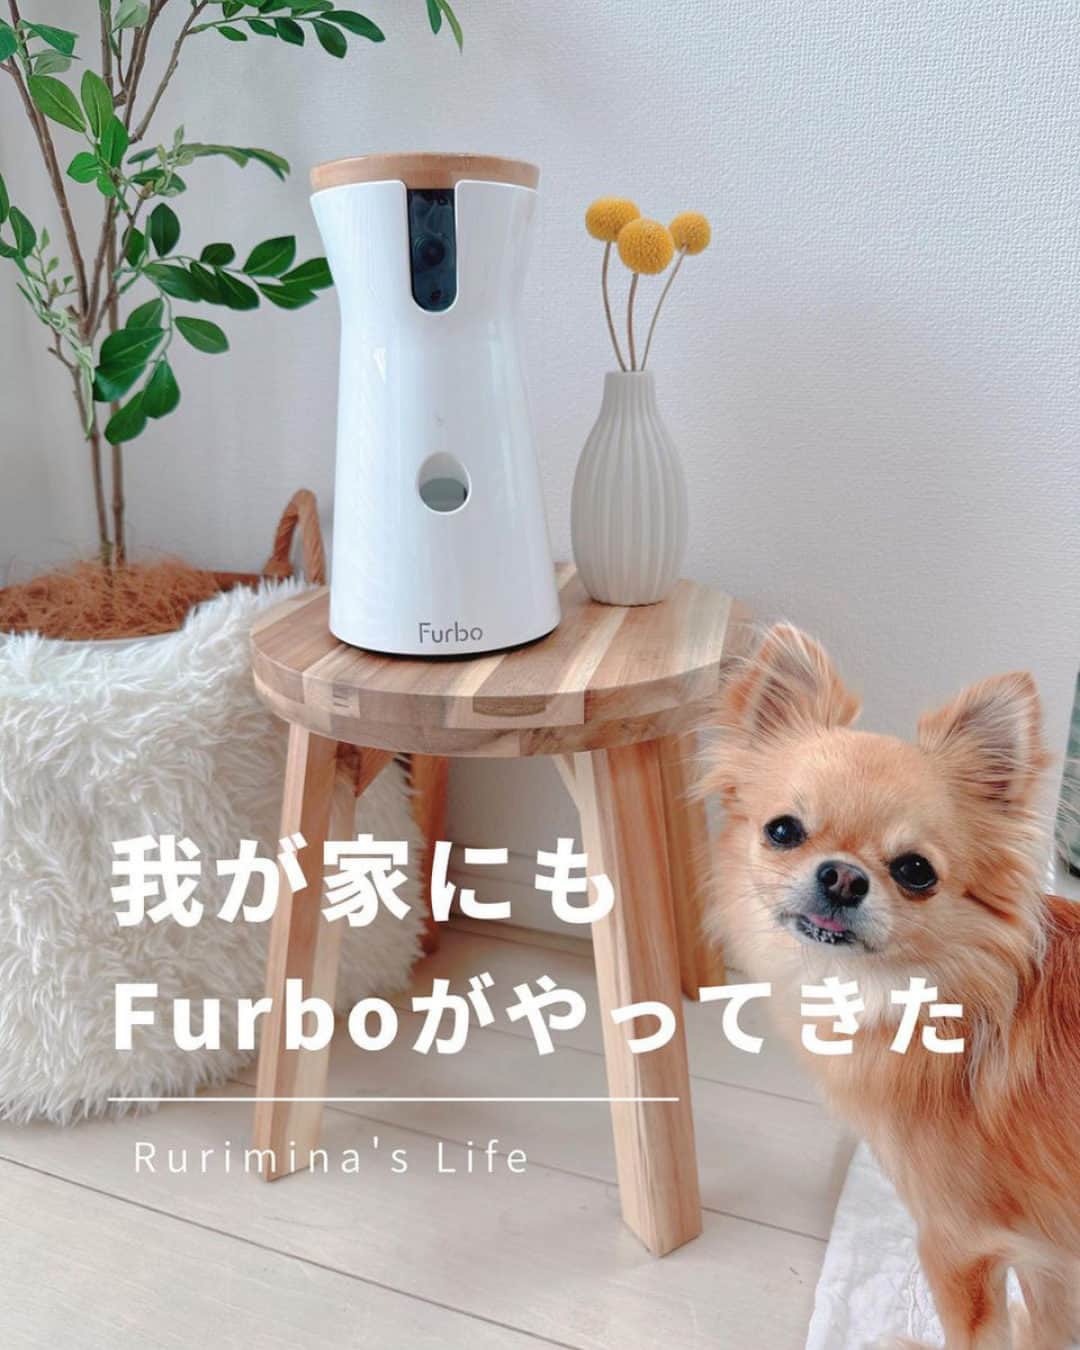 Furbo ドッグカメラのインスタグラム：「@furbo_japan 👈 他の投稿はこちらから     [ るりみなさん @rurimina_room レビュー✍️✨ ]  とうとう我が家にもFurboが🧡  ペットカメラは持ってはいるんだけど、 Furboに回転360°ビュー＆愛犬自動追尾機能が 新しく搭載されたそうで導入しました🫶  画質がとっても綺麗で、 部屋の中どこにいてもわかるので、 お留守番中の安心感ったら🥹  Furboドッグシッターに登録すると、 AIがわんこの動いた様子を感知して自動録画、 1日の瑠璃の動きを60秒にまとめてくれます☺️   ┈┈┈┈┈┈┈┈┈┈┈┈┈┈┈┈┈┈┈┈┈┈┈     「わんこのお留守番が心配で外出が不安🥲」  そんなお悩みを抱えているあなたを……  No.1ペットカメラの #Furbo ドッグカメラ 360°ビューが サポートします！💛     ✦ 回転360°ビューカメラ&自動追尾機能つき ✦ リモート操作可能のおやつ機能 ✦ カラーモードを新たに搭載した暗視機能 ✦ 超クリアな双方向会話で愛犬とおしゃべり ✧ AI活用+機能のFurboドッグシッターでさらに安心！ 　　　　　　　　　　　　　　　　etc…    最安値プランは公式サイト限定🤭  プロフィールのリンクから まずは価格を比較してみてください🔍✨ ▶︎ @furbo_japan  #Furbo #ファーボ #ドッグカメラ #ペットカメラ #見守りカメラ #お留守番カメラ #お留守番犬 #犬の留守番 #お留守番ありがとう #犬好きな人と繋がりたい #犬すたぐらむ #愛犬との暮らし #チワワ #chihuahua」